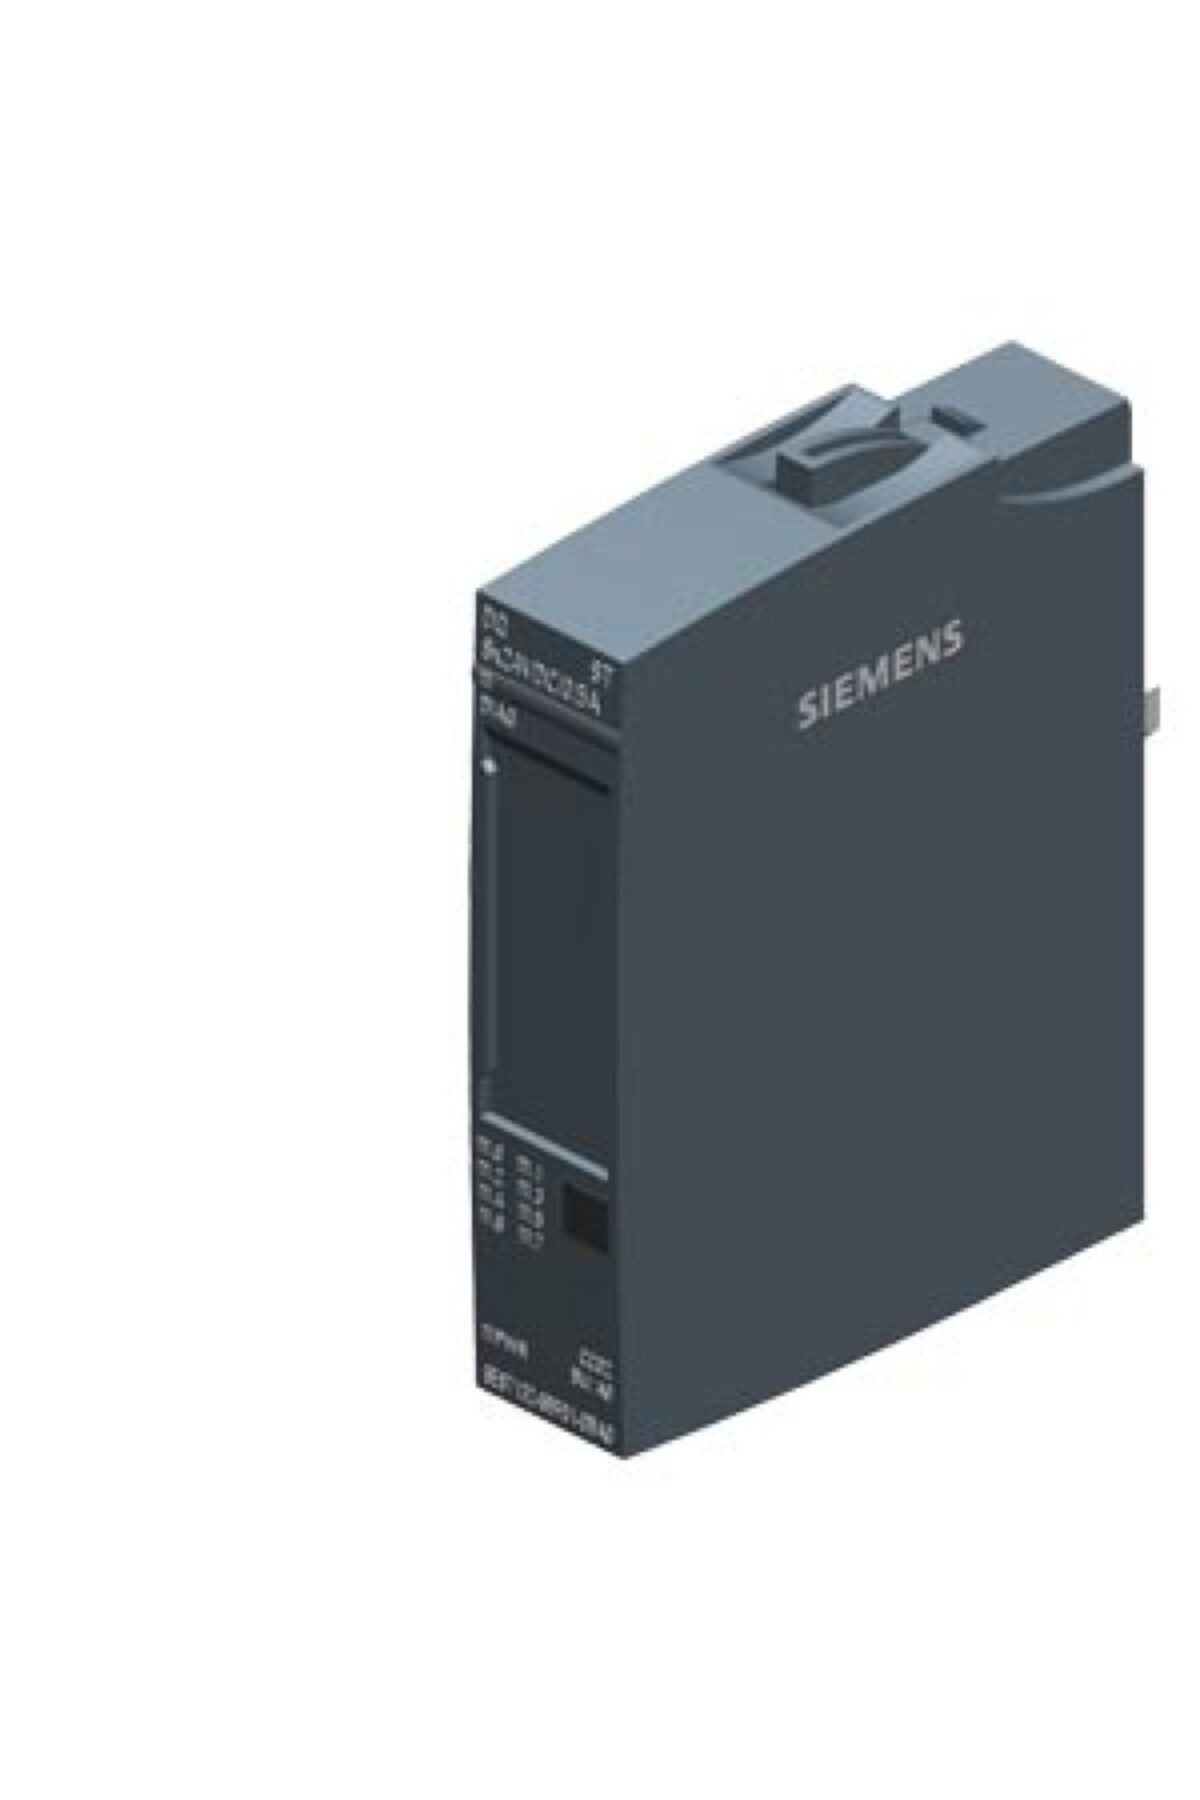 Siemens 6es7132-6bf01-0ba0 Et 200sp Dq Modül 8x 24 V Dc